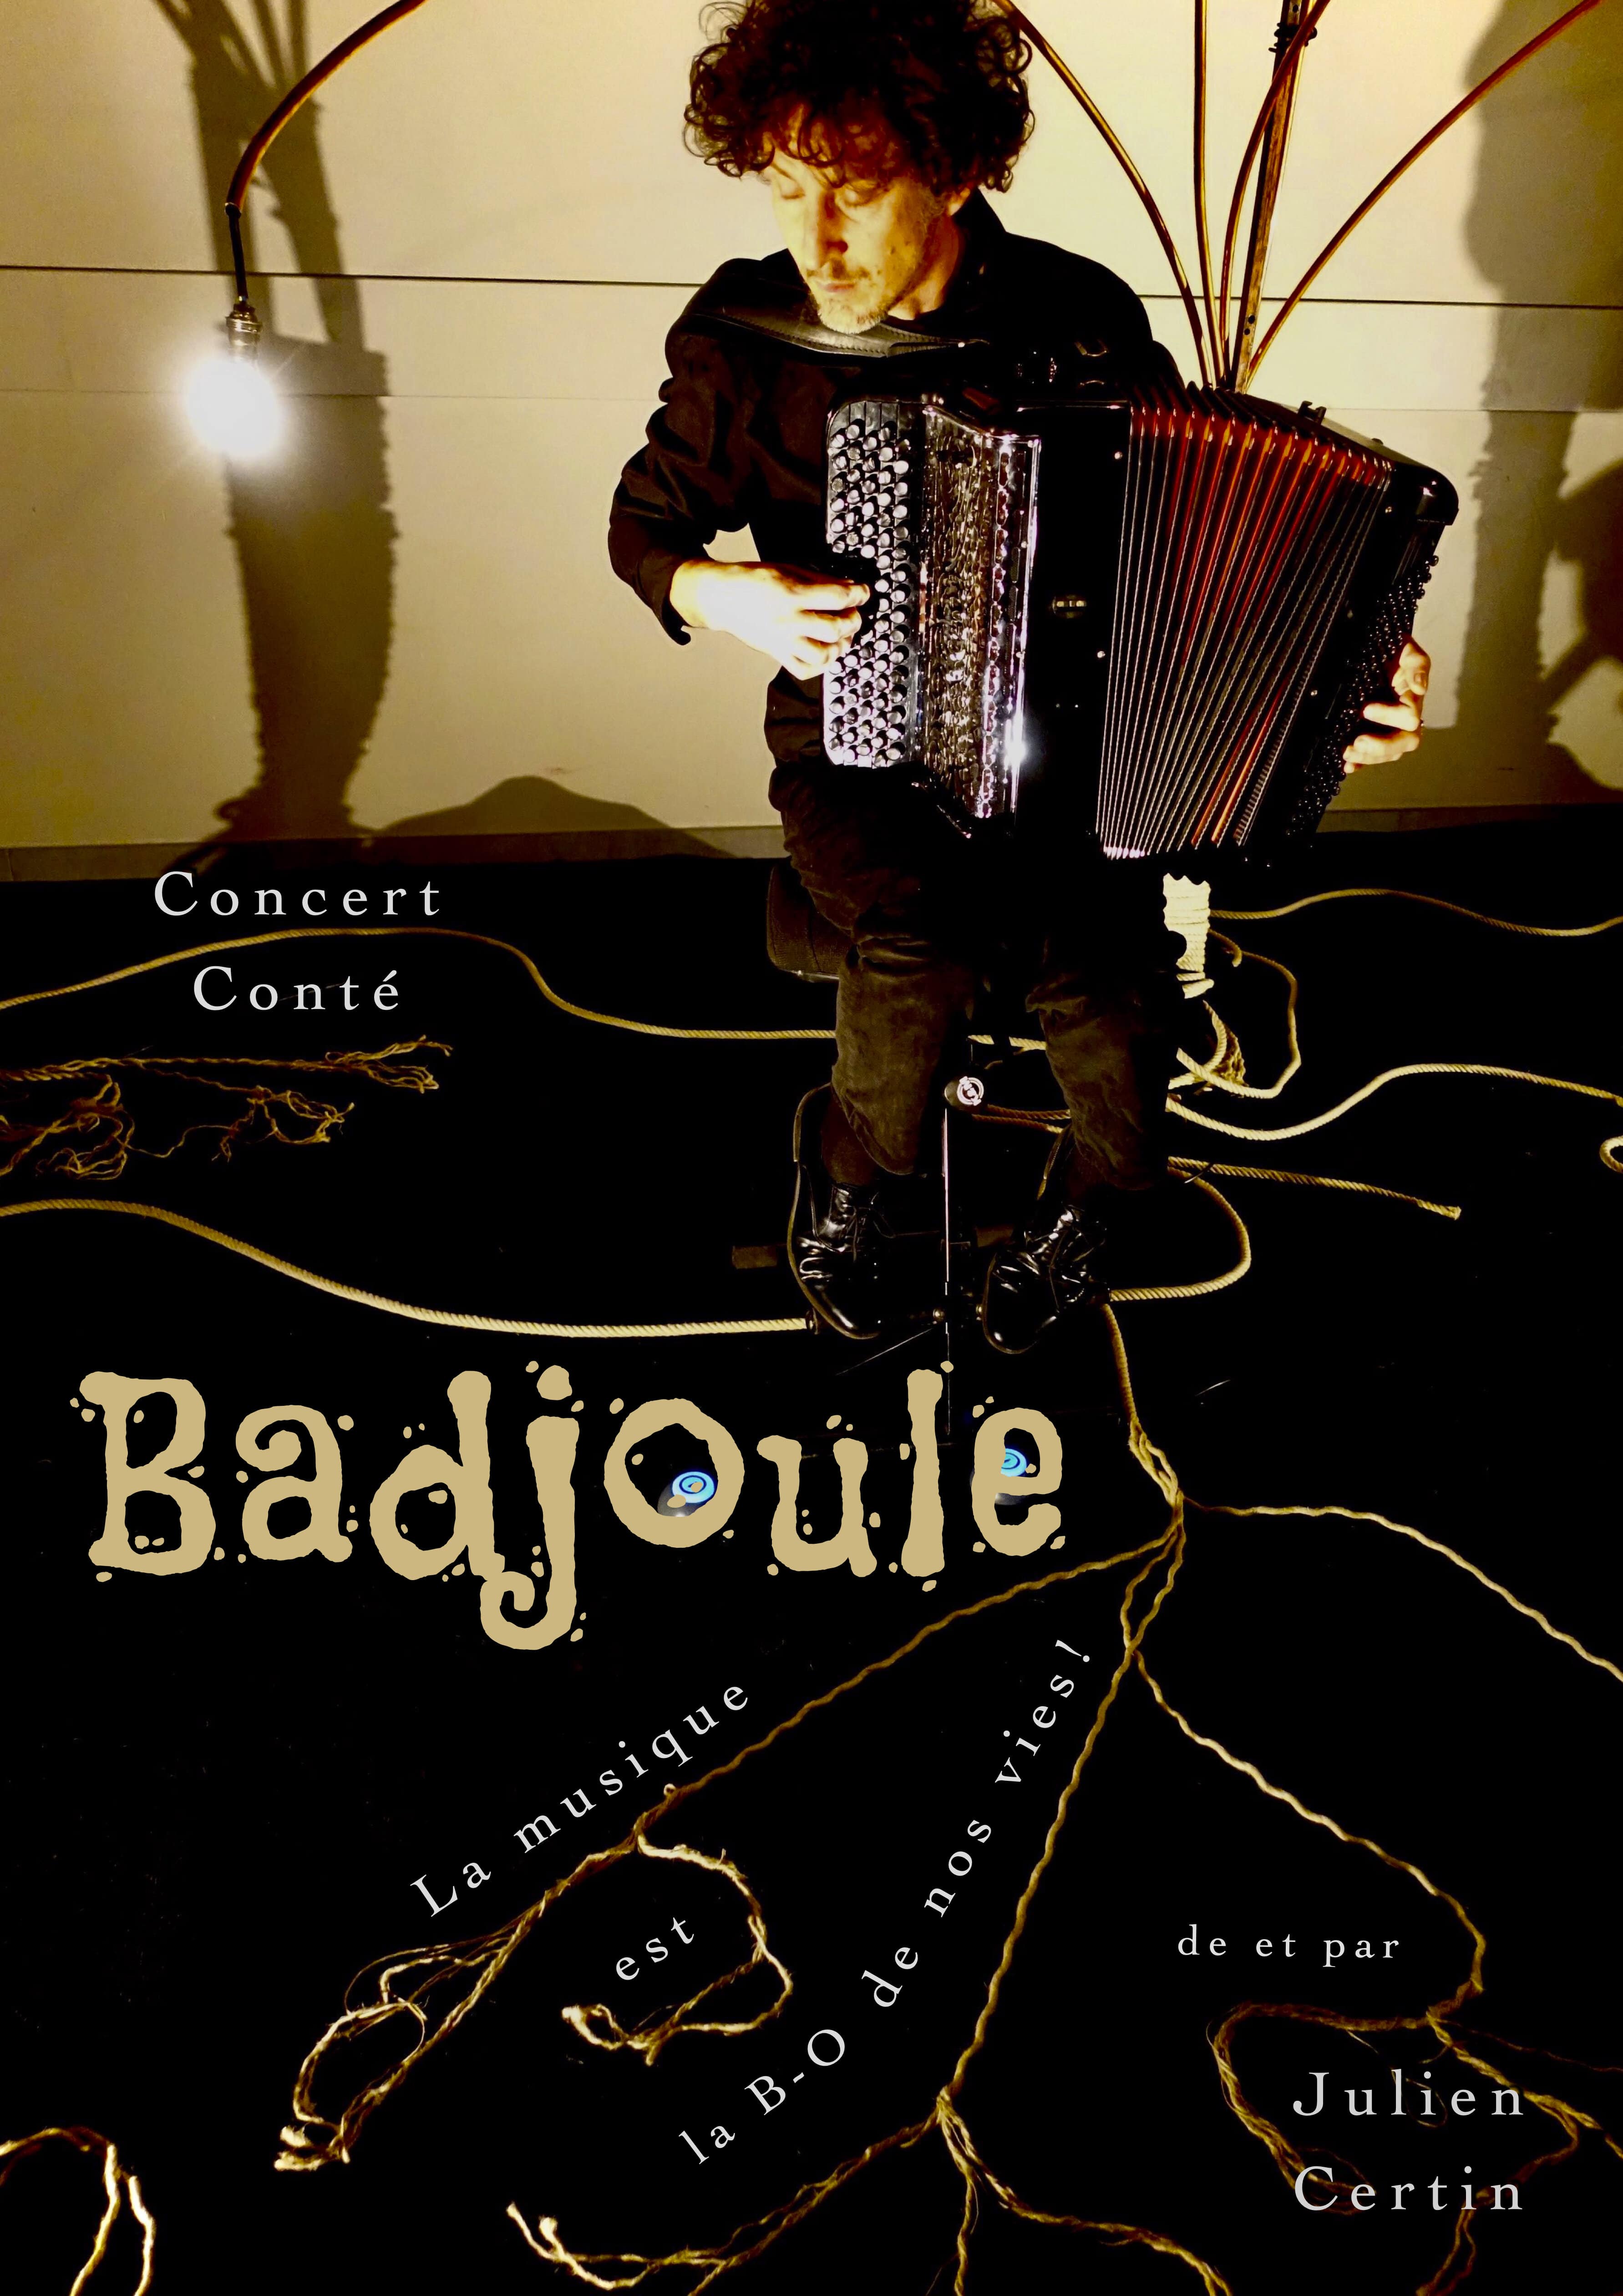 Concert conté "Badjoule"